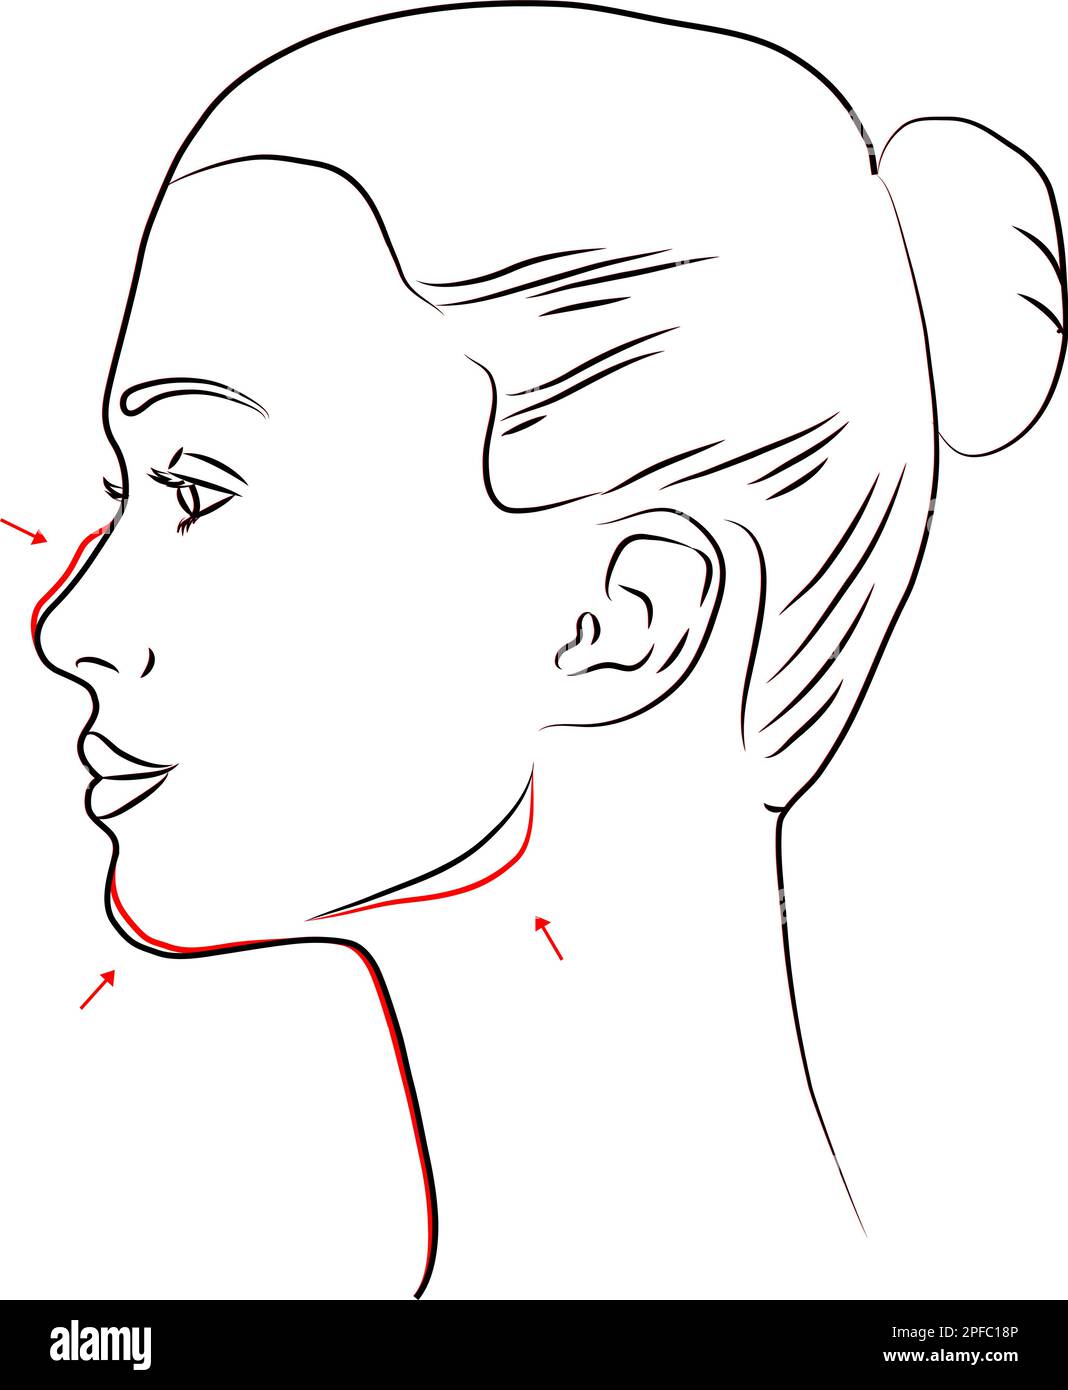 médecine esthétique avant et après du profil d'une femme. Illustration vectorielle de dessin de ligne Illustration de Vecteur